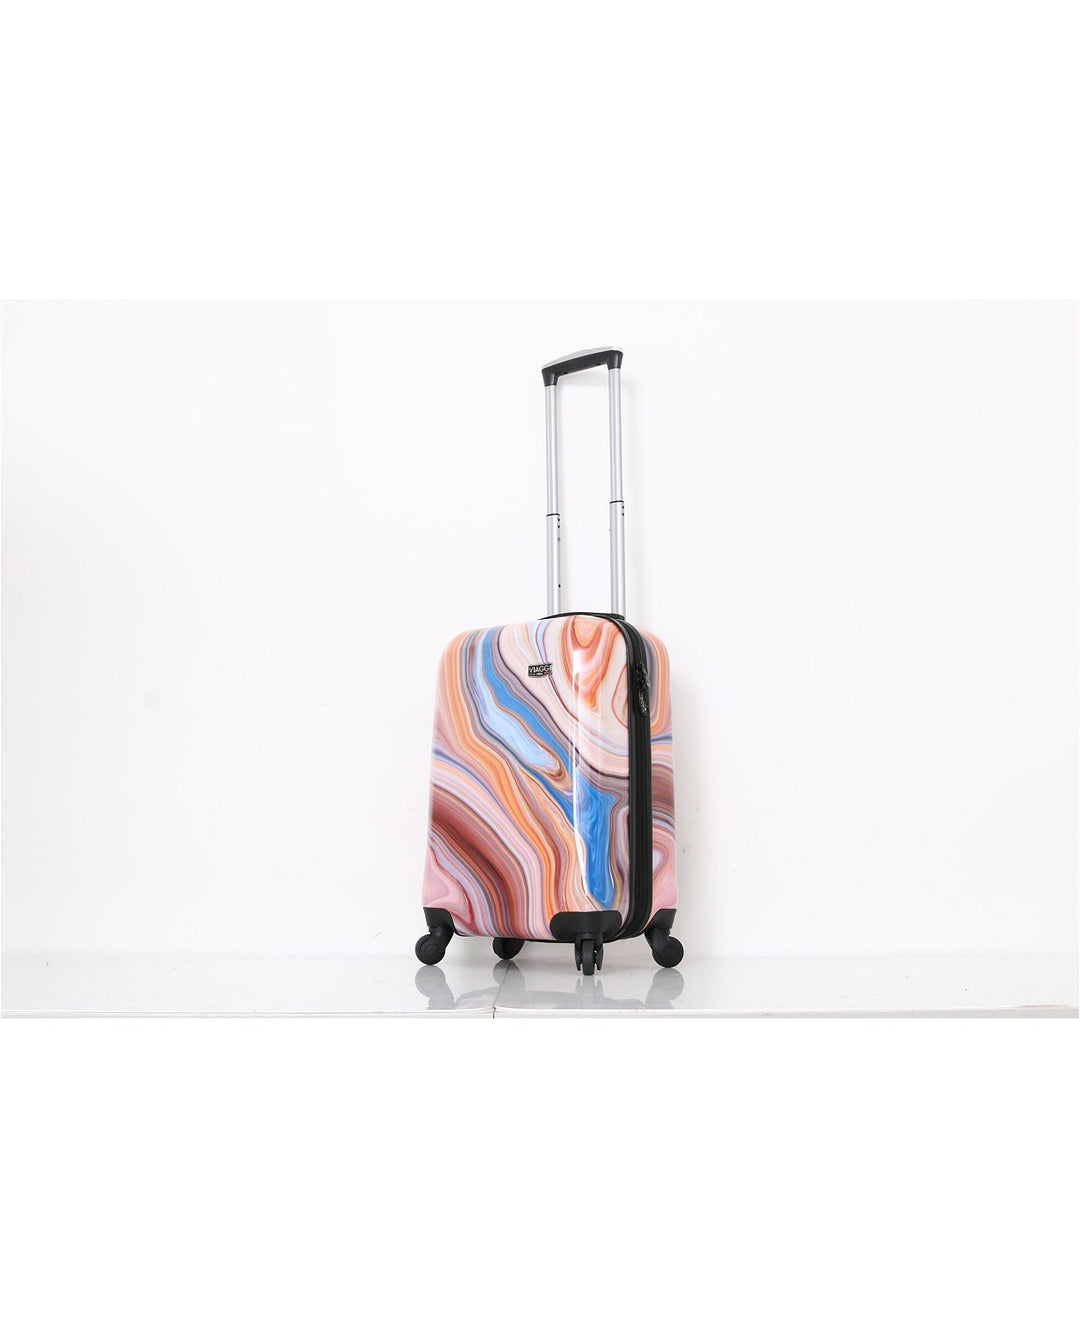 Mia Viaggi Italy 2 Piece Suitcase Set